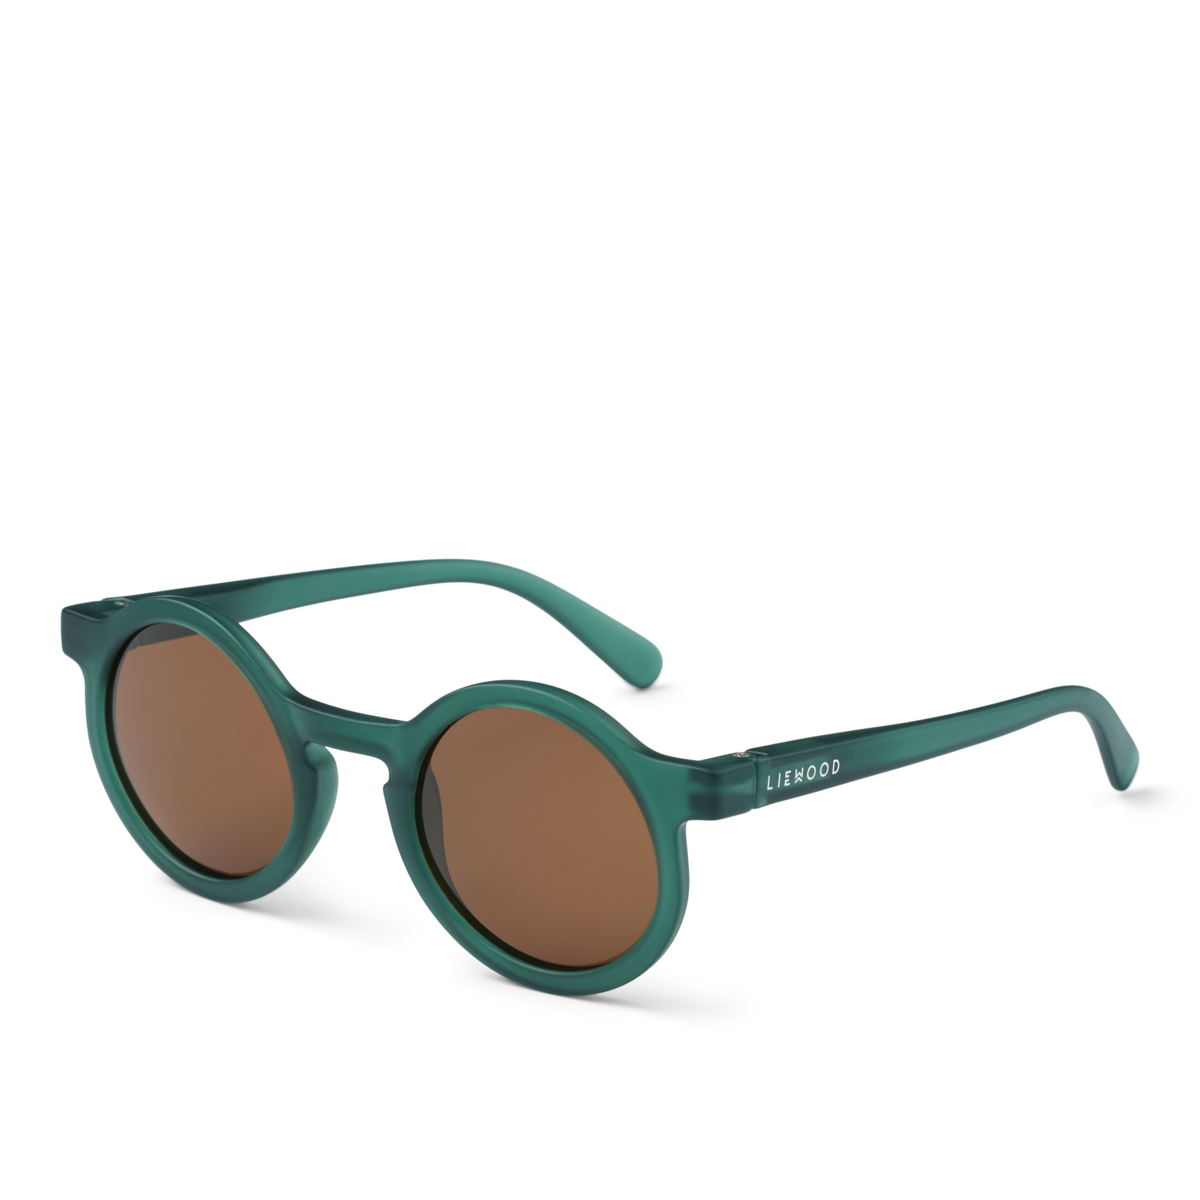 Darla Sonnenbrille für Kinder Liewood - Für 4-10 Jährige